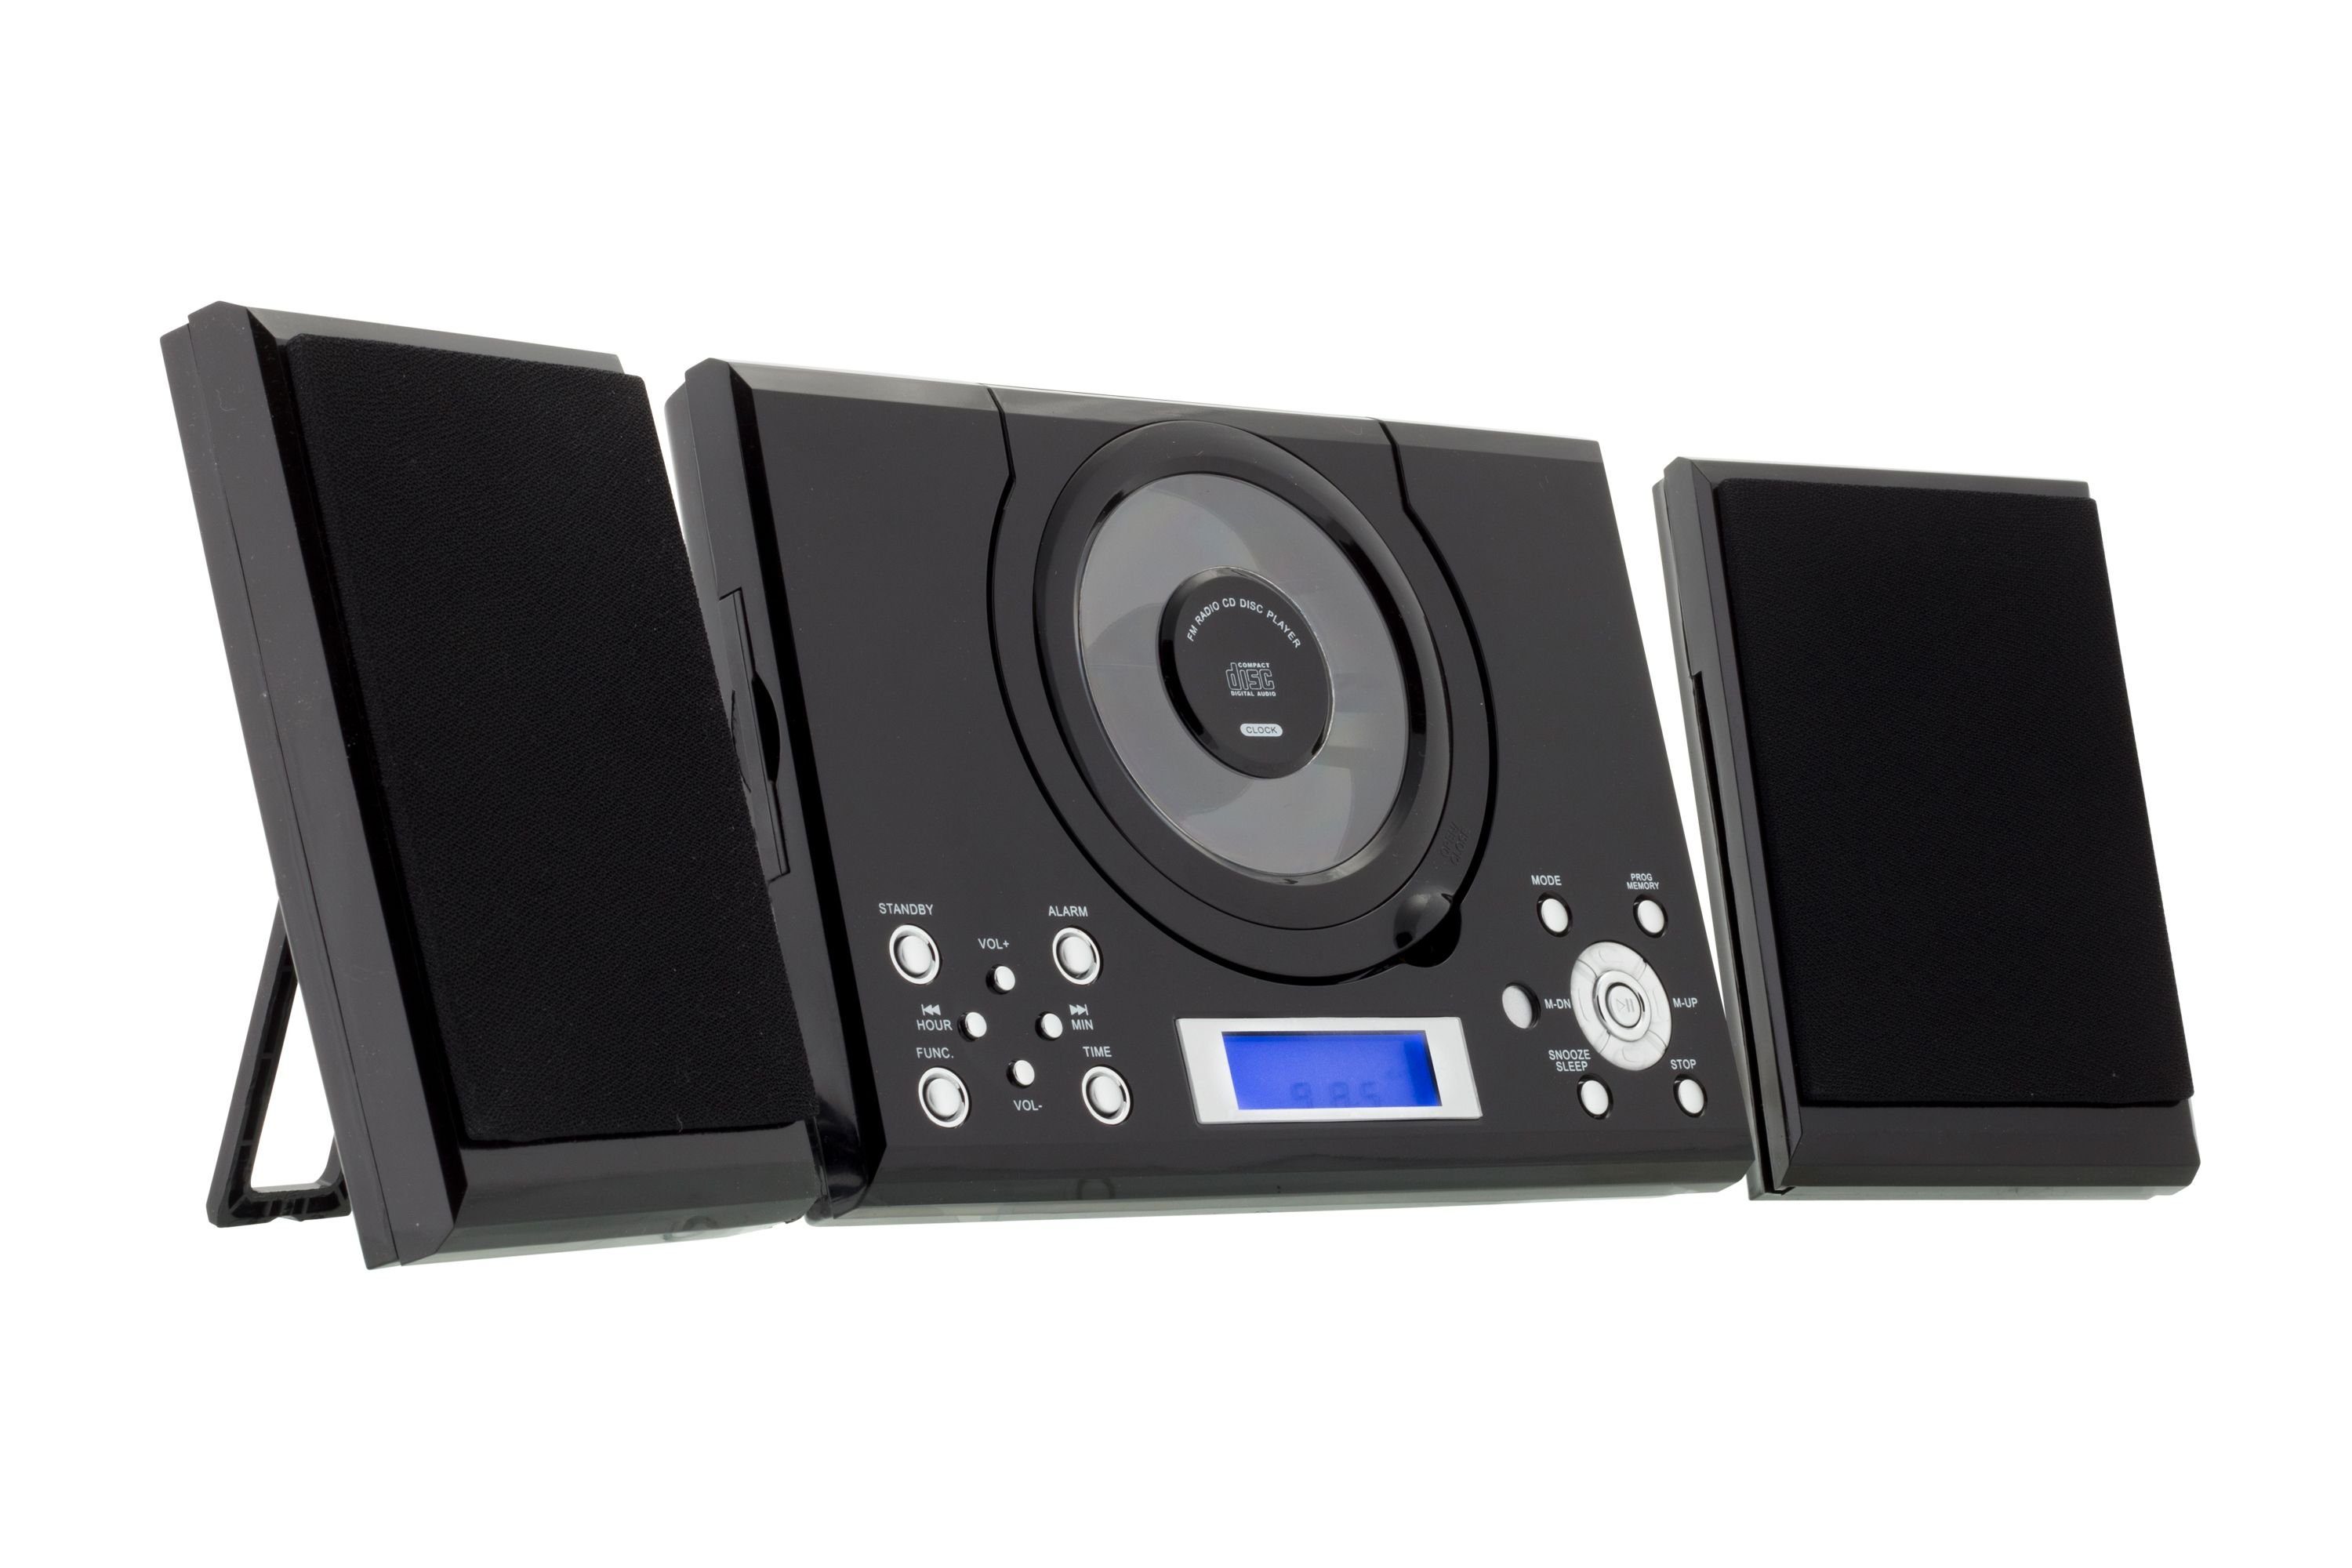 ROXX MC 201 AUX PLL In und Microanlage Radiotuner AUX-IN), Radio, Stereoanlage Audioanschluss und Stereoanlage (UKW Kopfhöreranschluß mit mit CD-Player